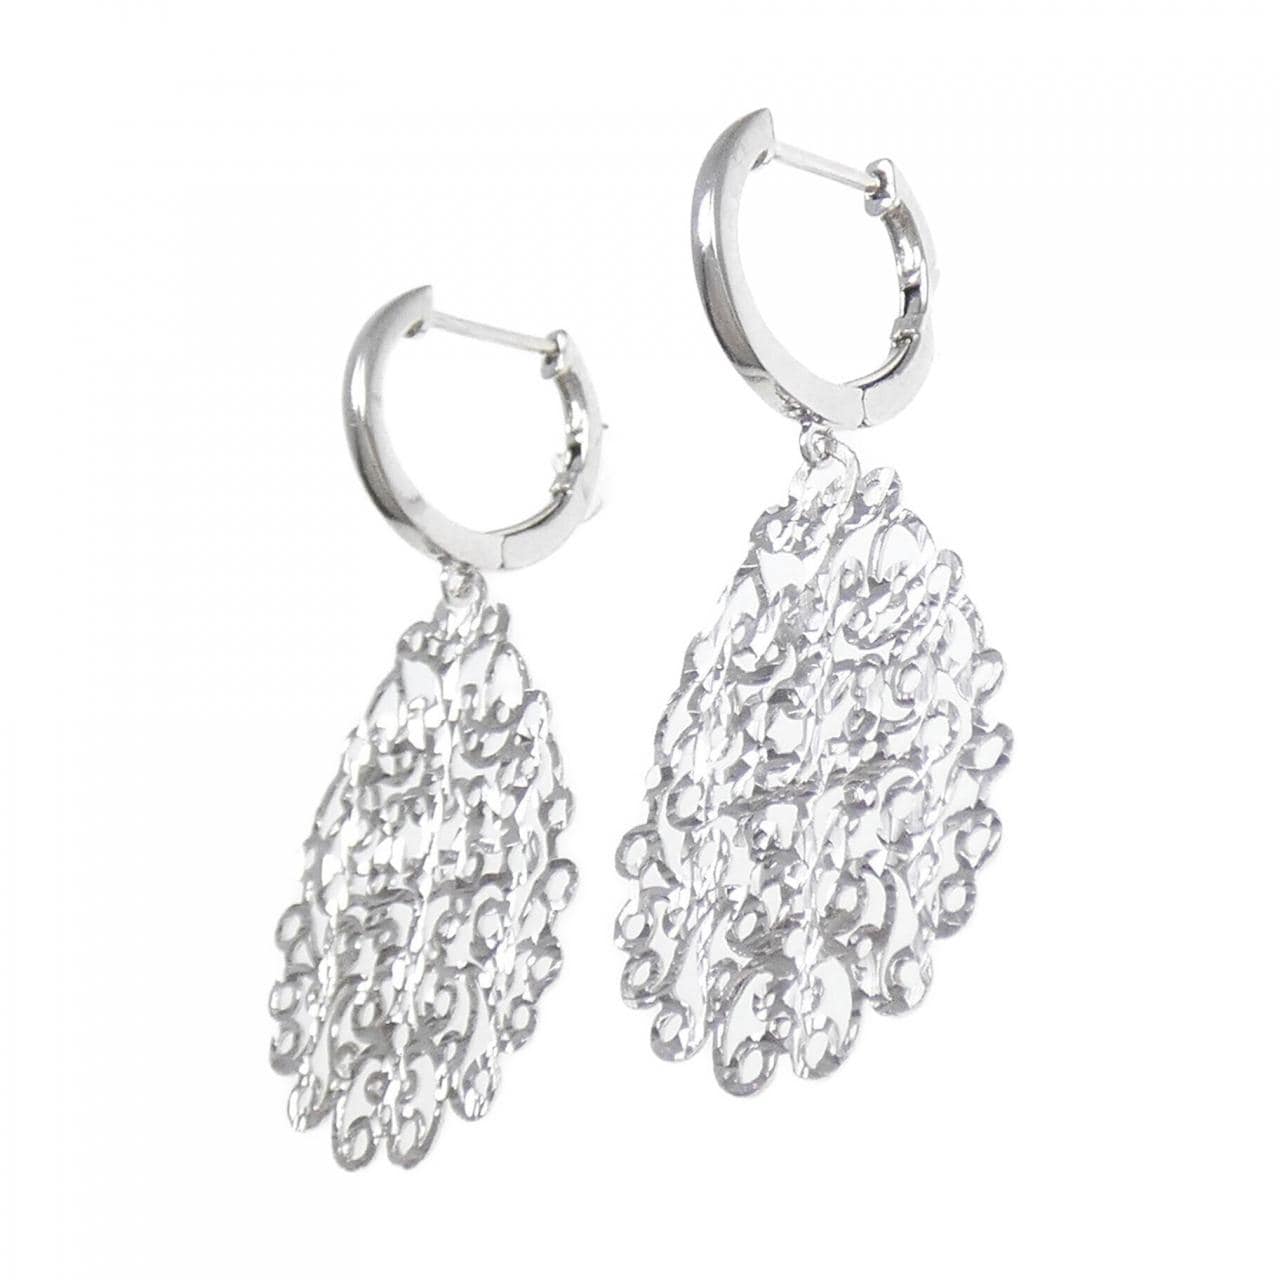 K18WG earrings